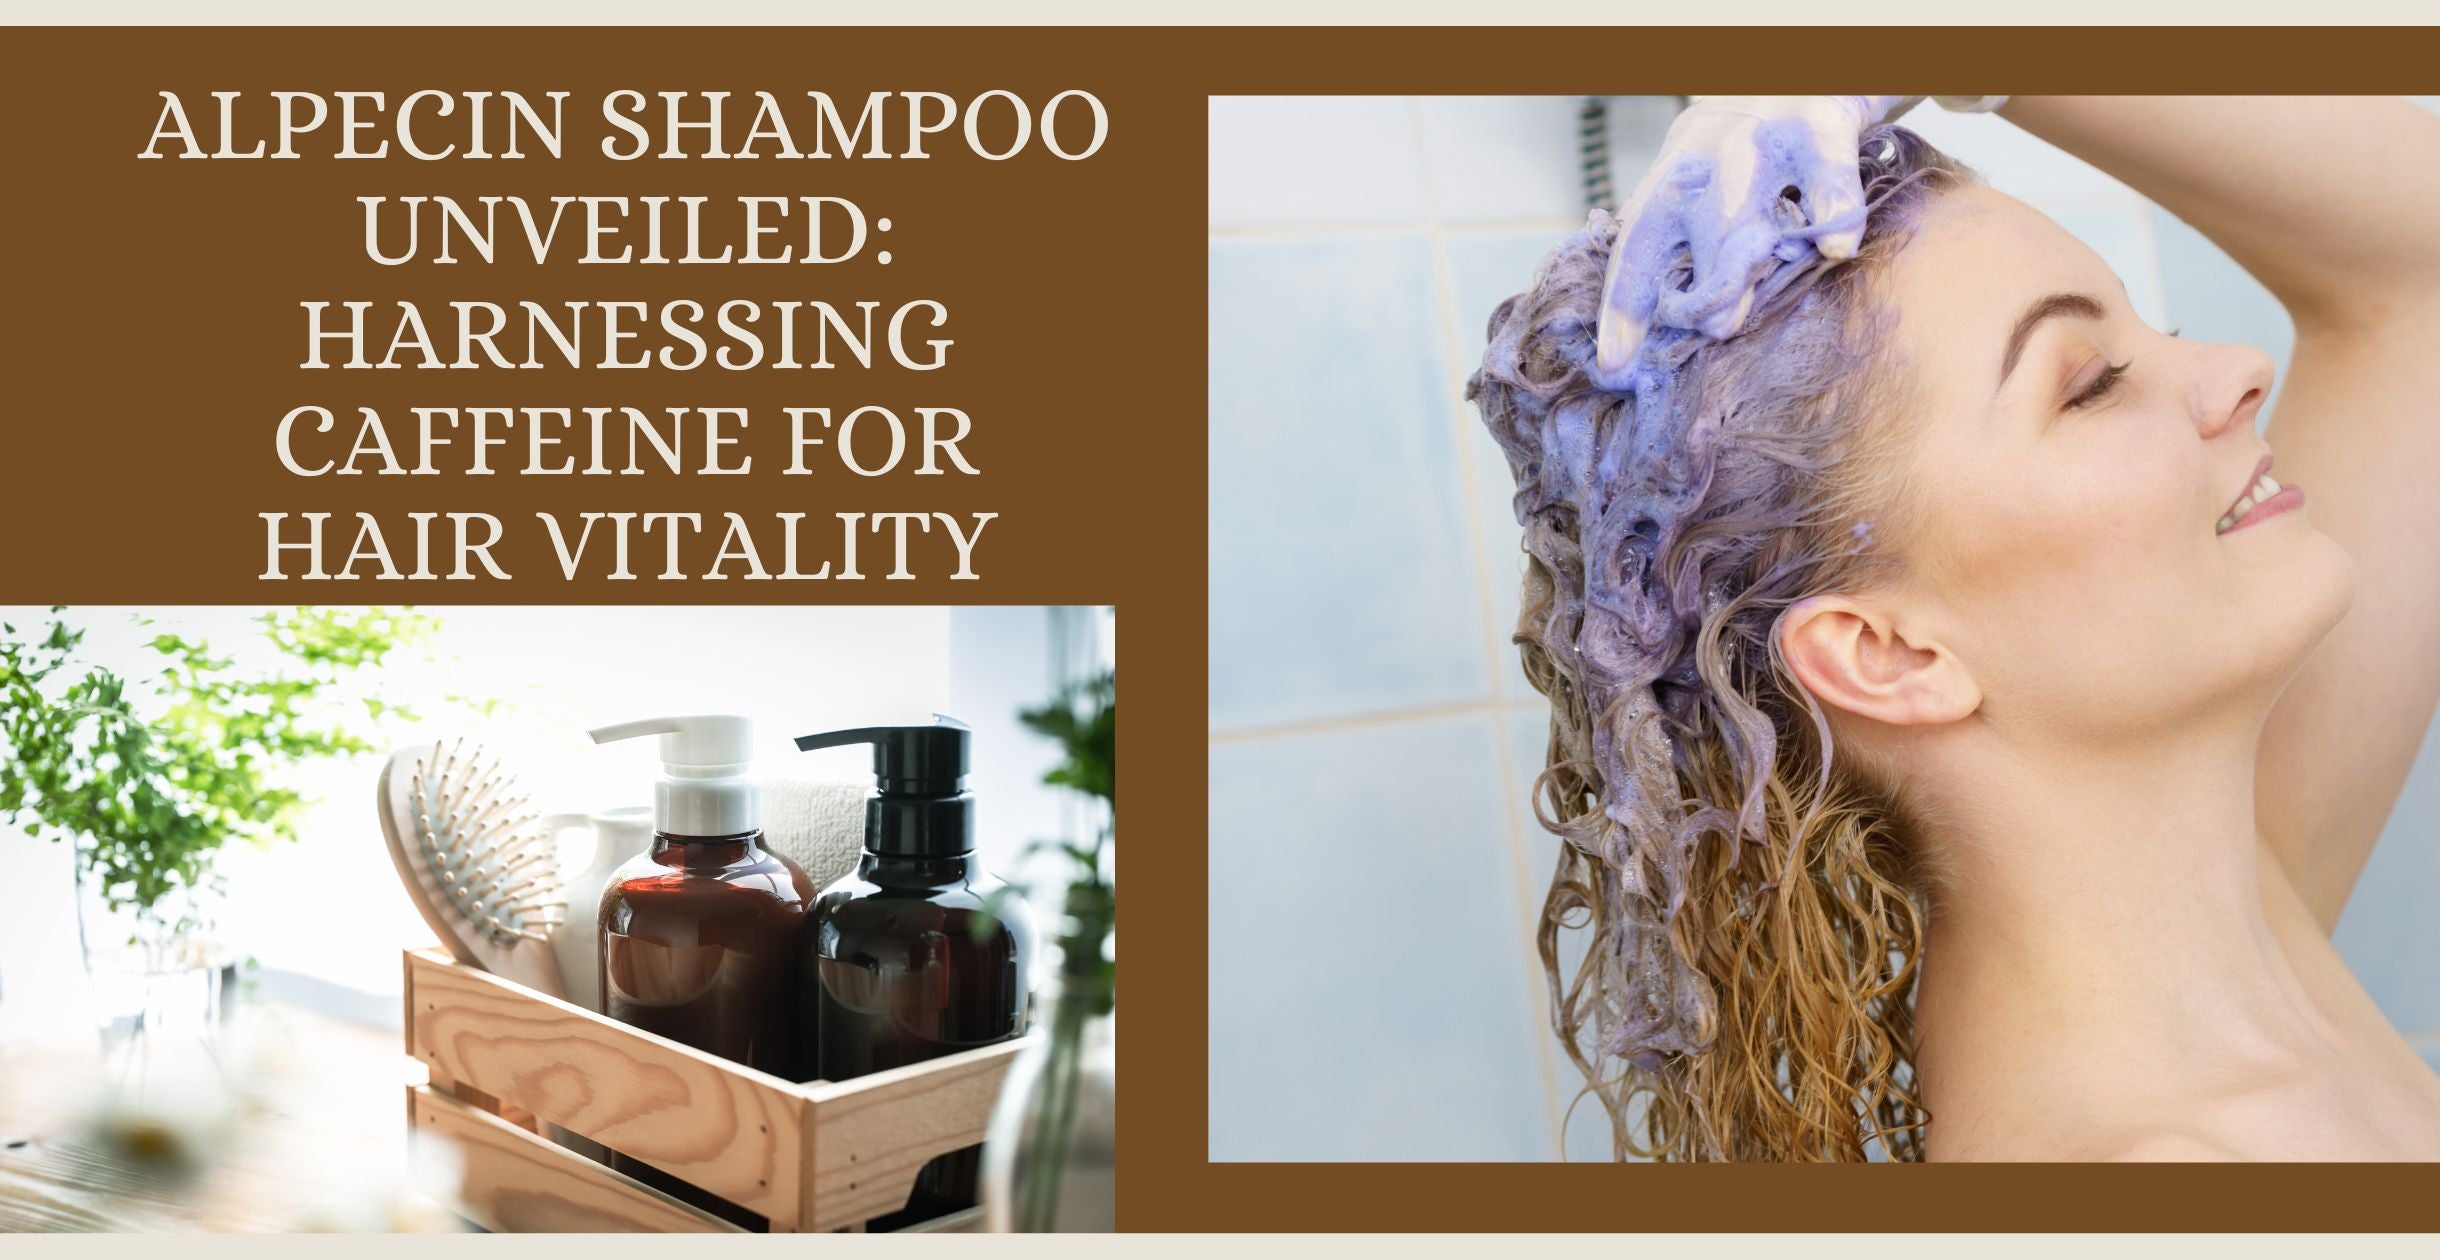 Alpecin Shampoo Unveiled: Harnessing Caffeine for Hair Vitality